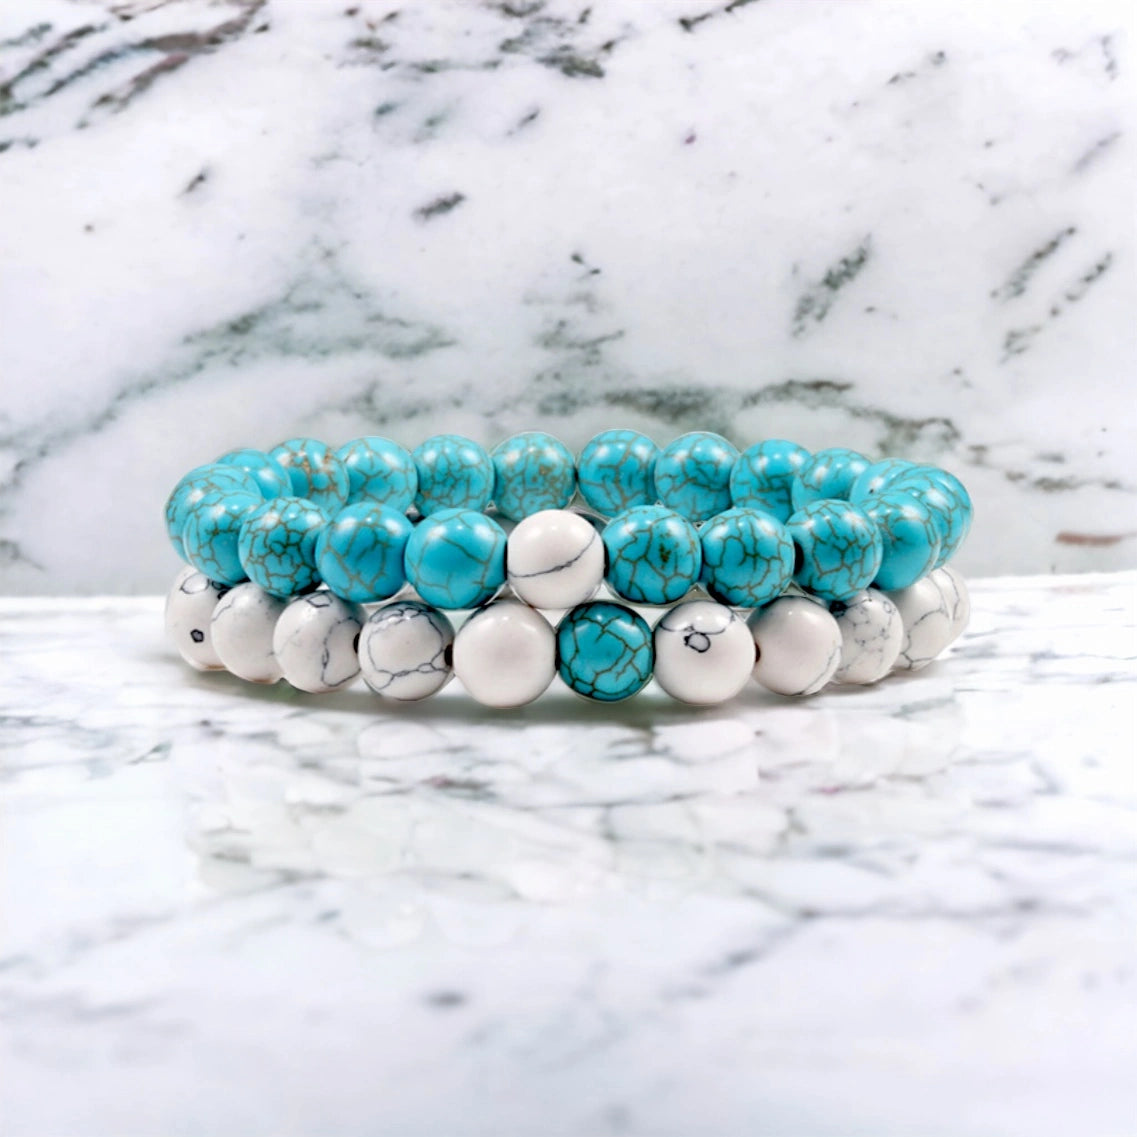 Tiffany and White Marble Stone Bracelet in Boho Style